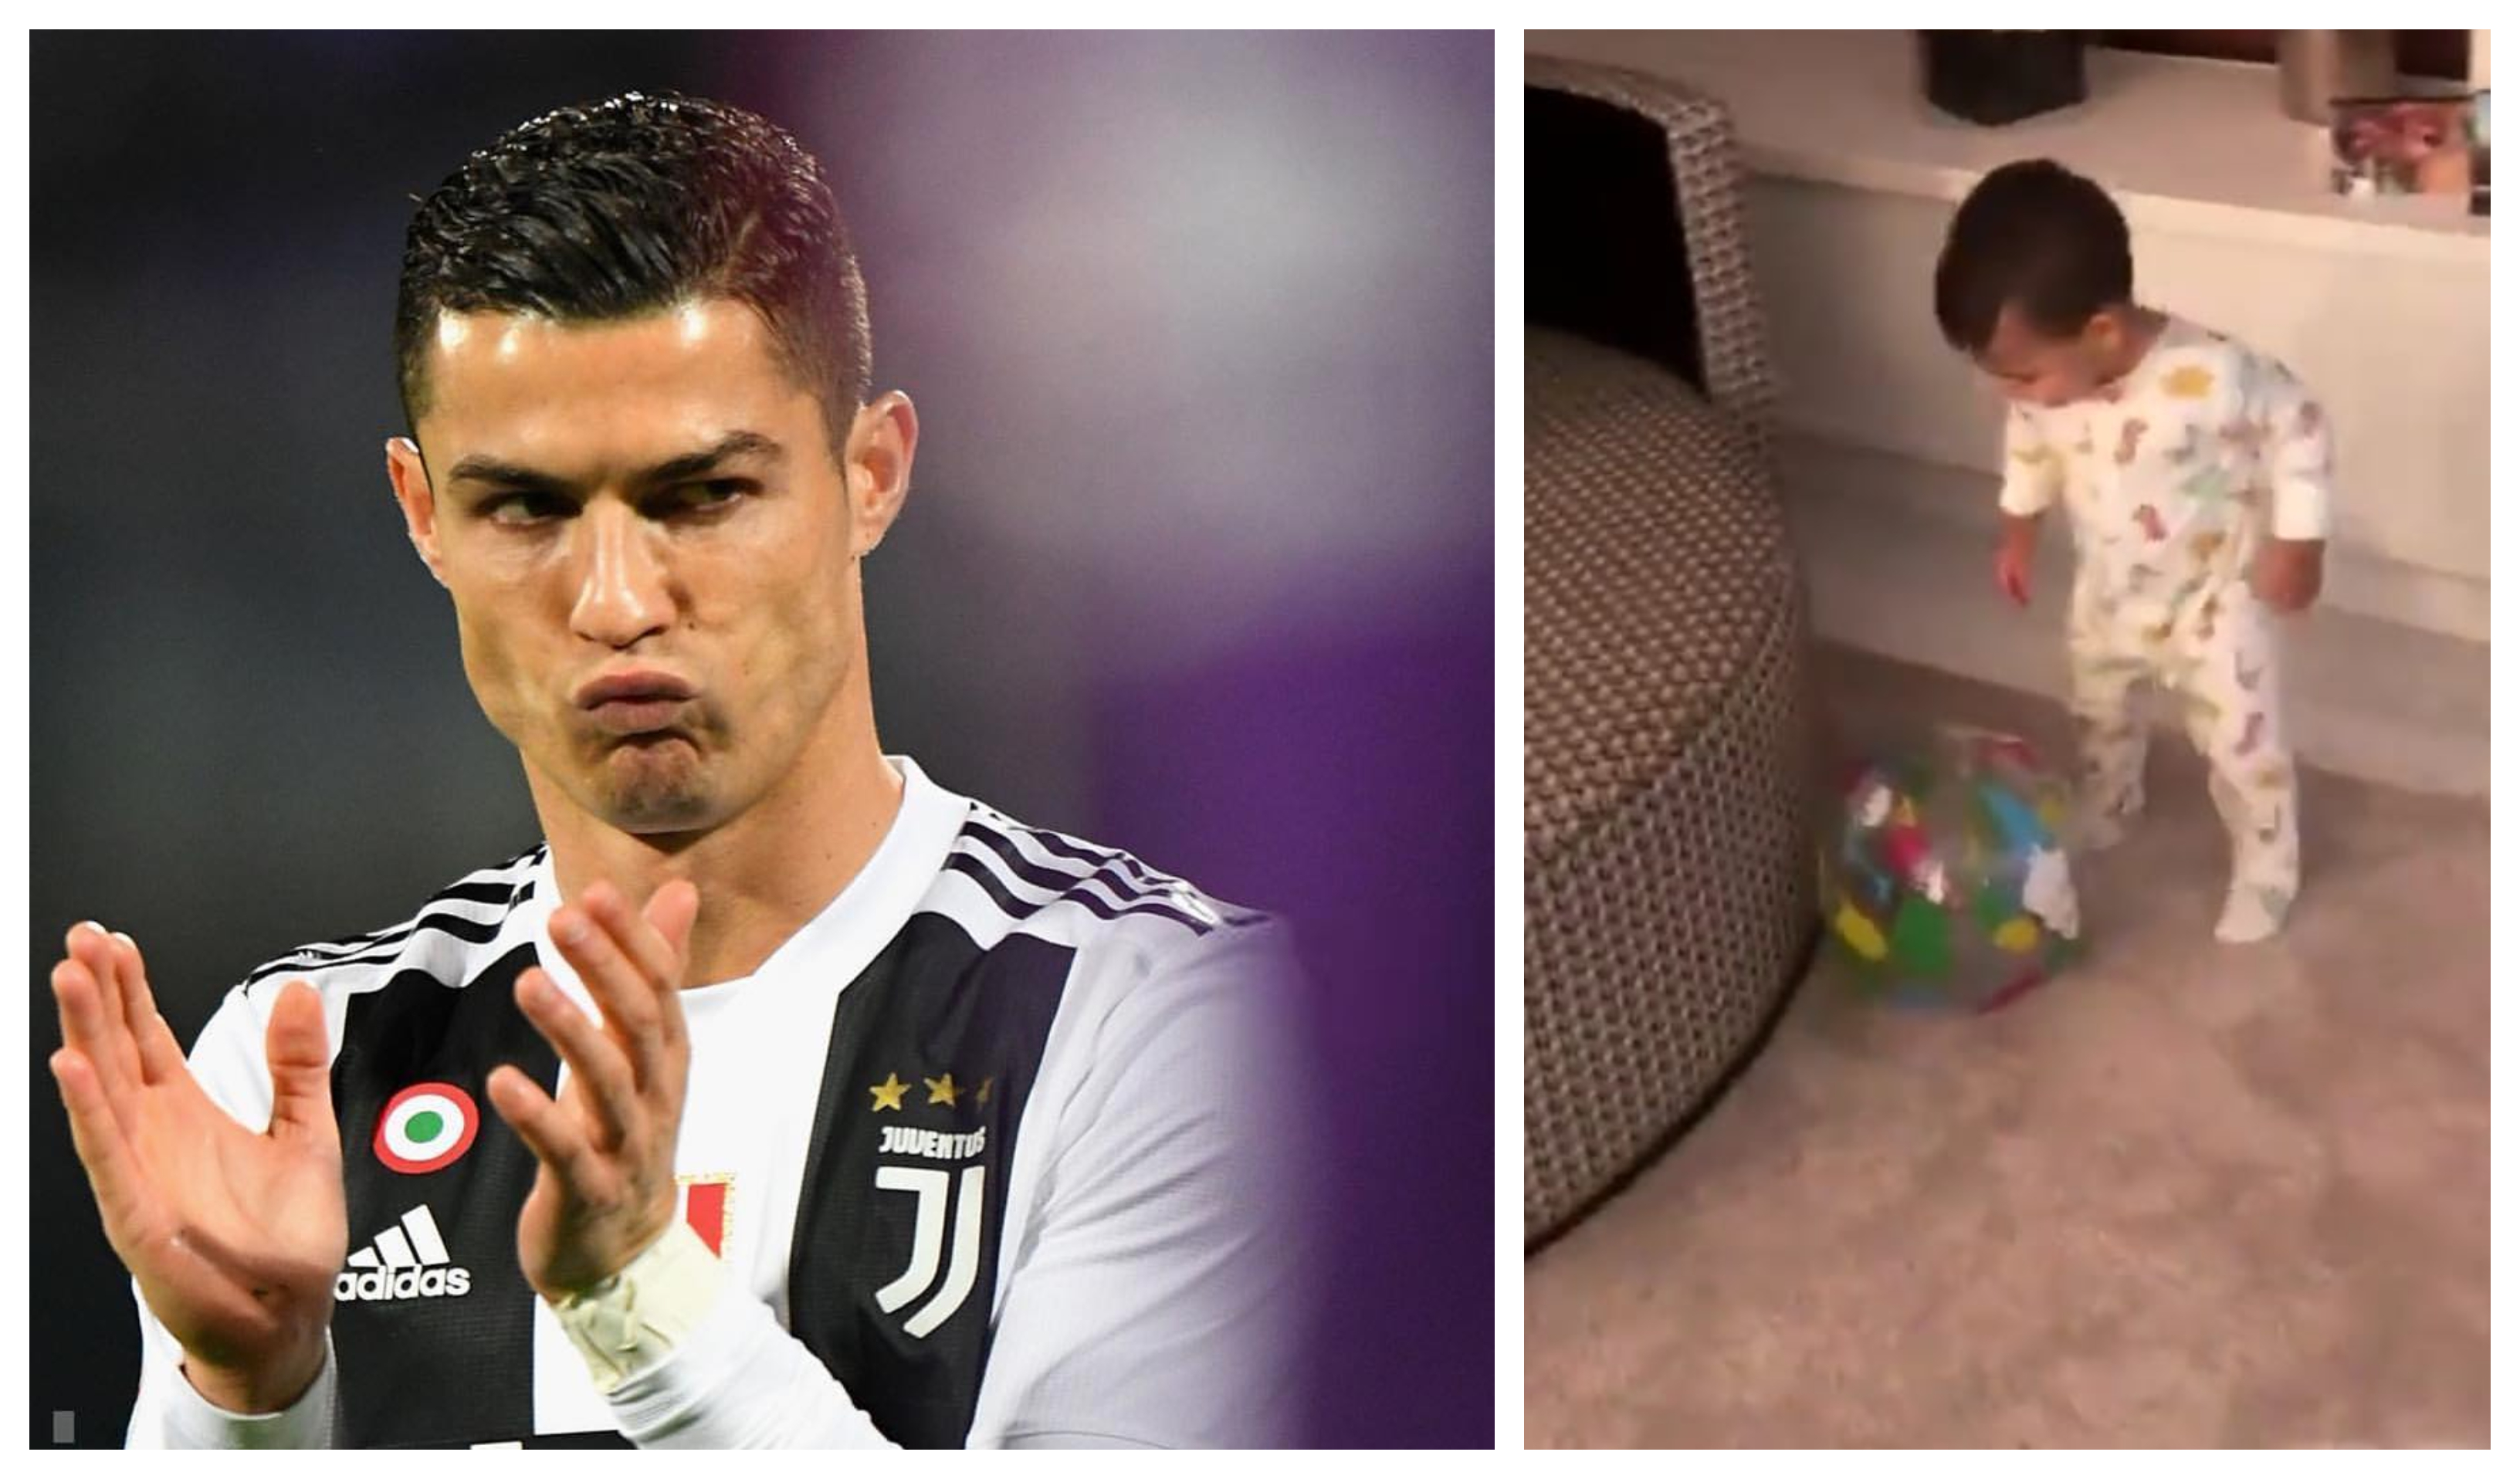 Mateo mostra talento para a bola e já chuta à Cristiano Ronaldo